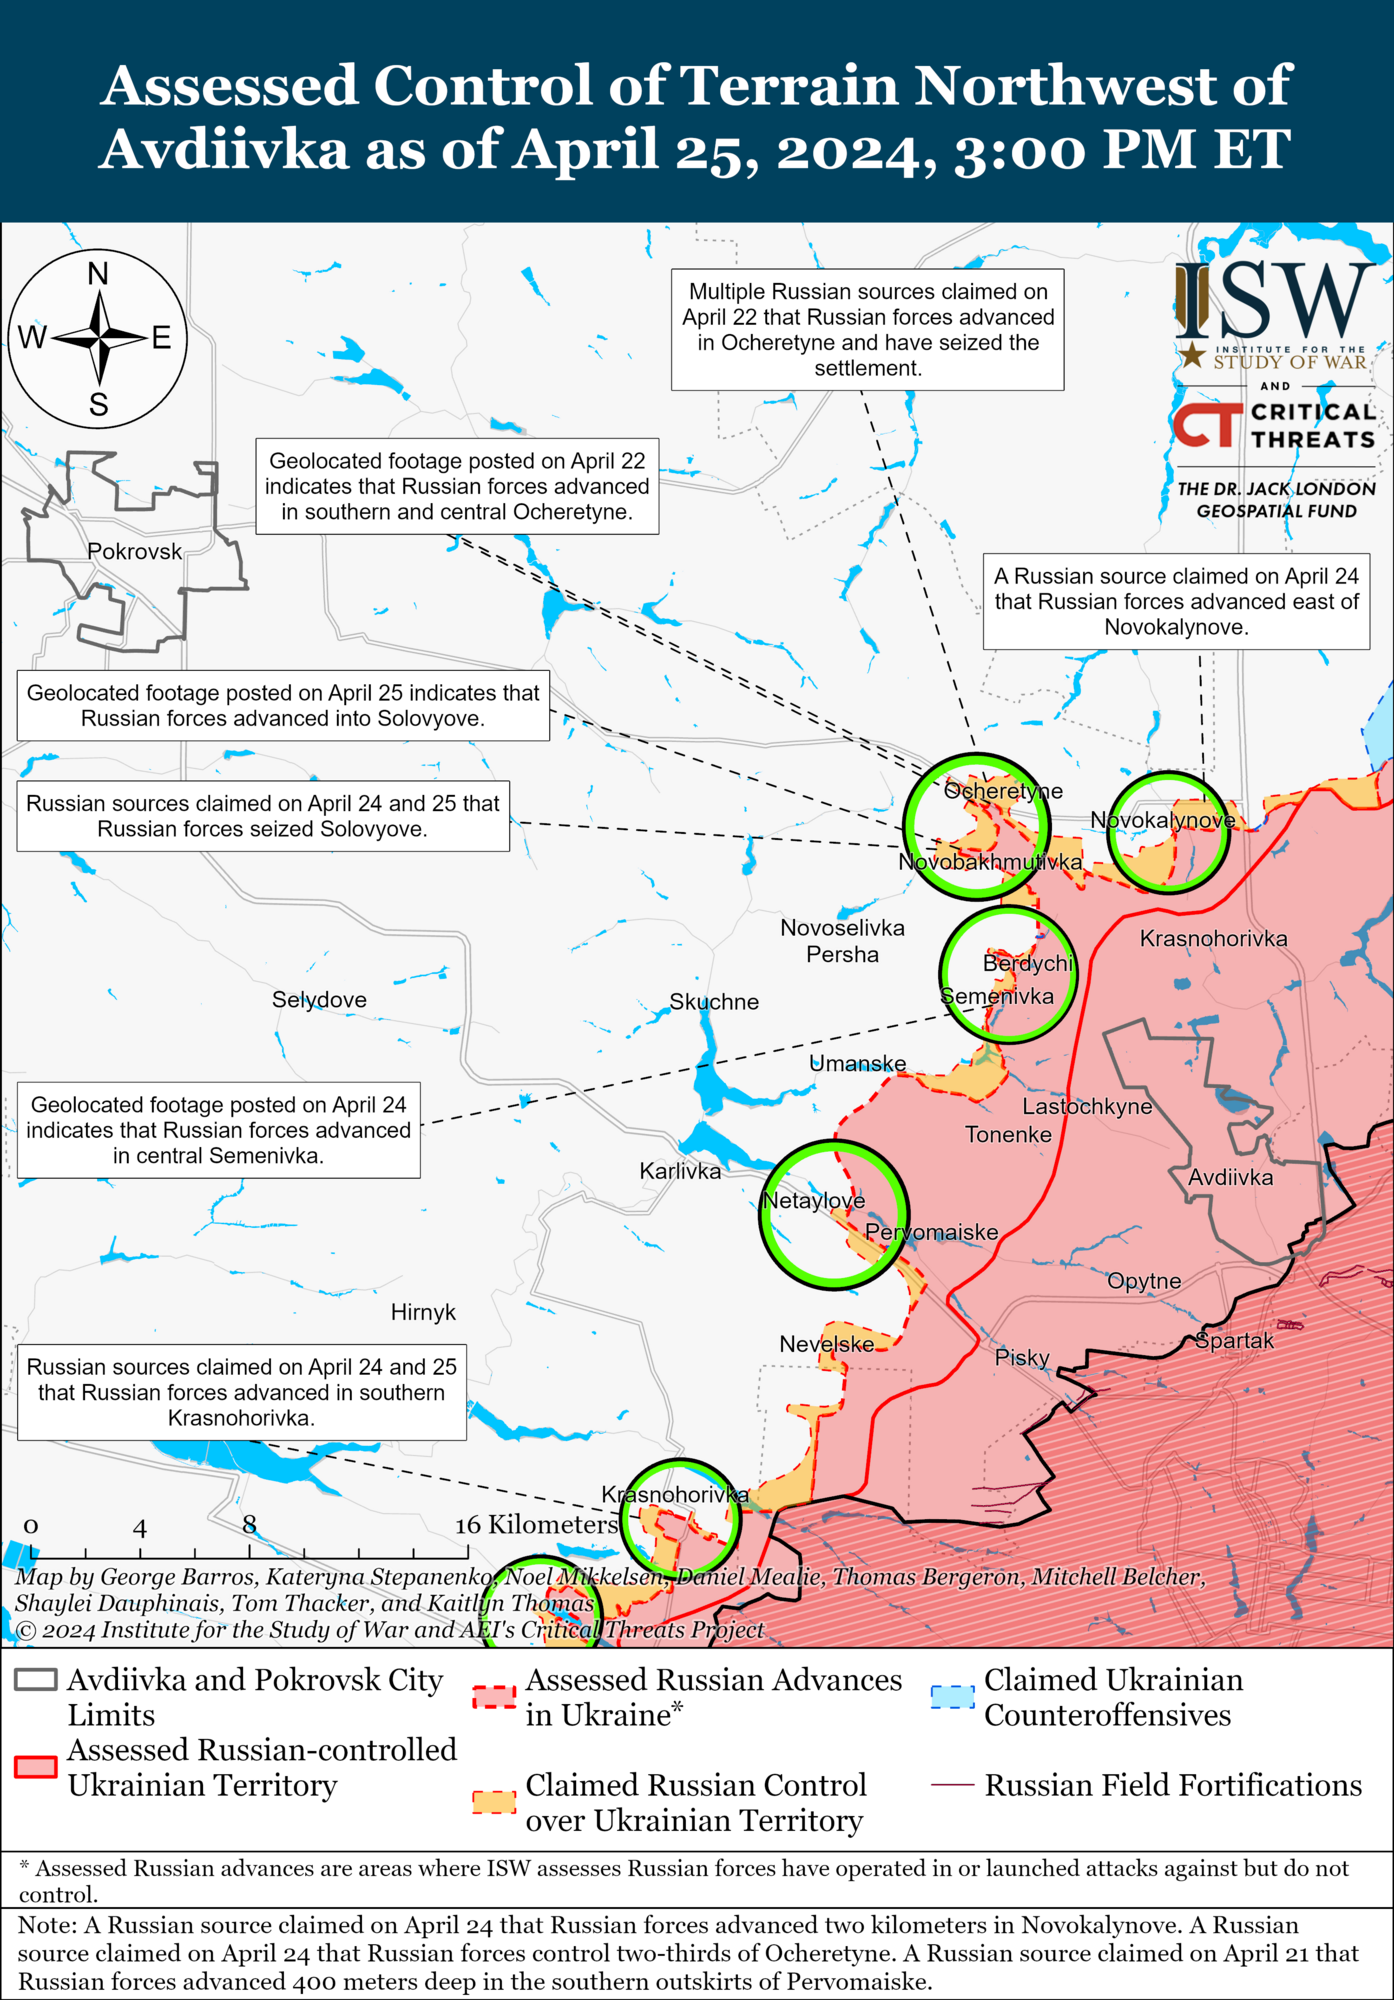 Враг может активизировать операции: в ISW оценили угрозы украинской обороне под Авдеевкой и Часовым Яром. Карта